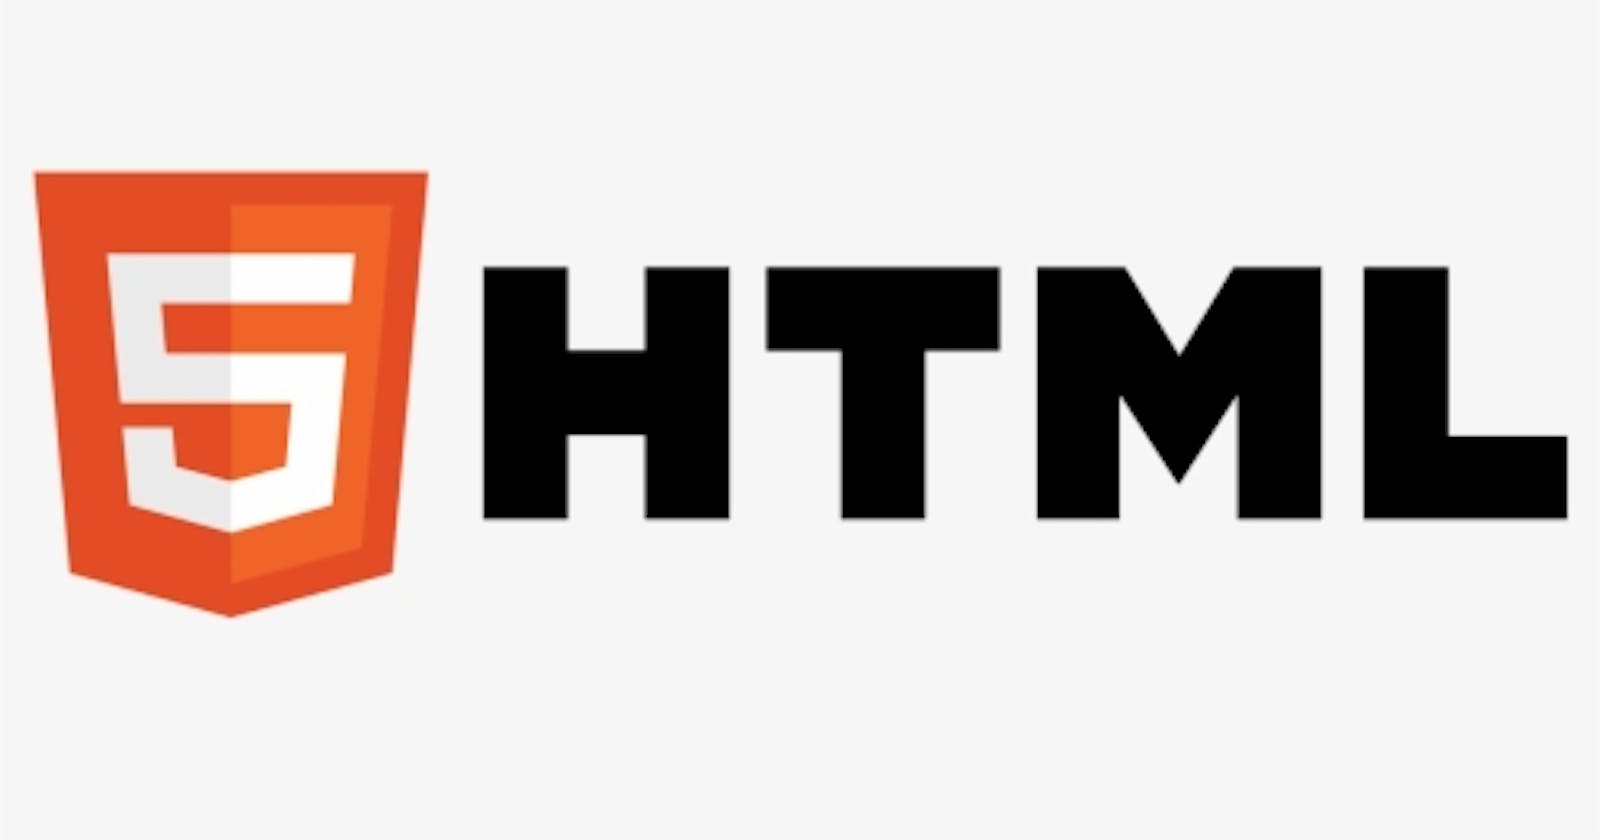 Meet HTML